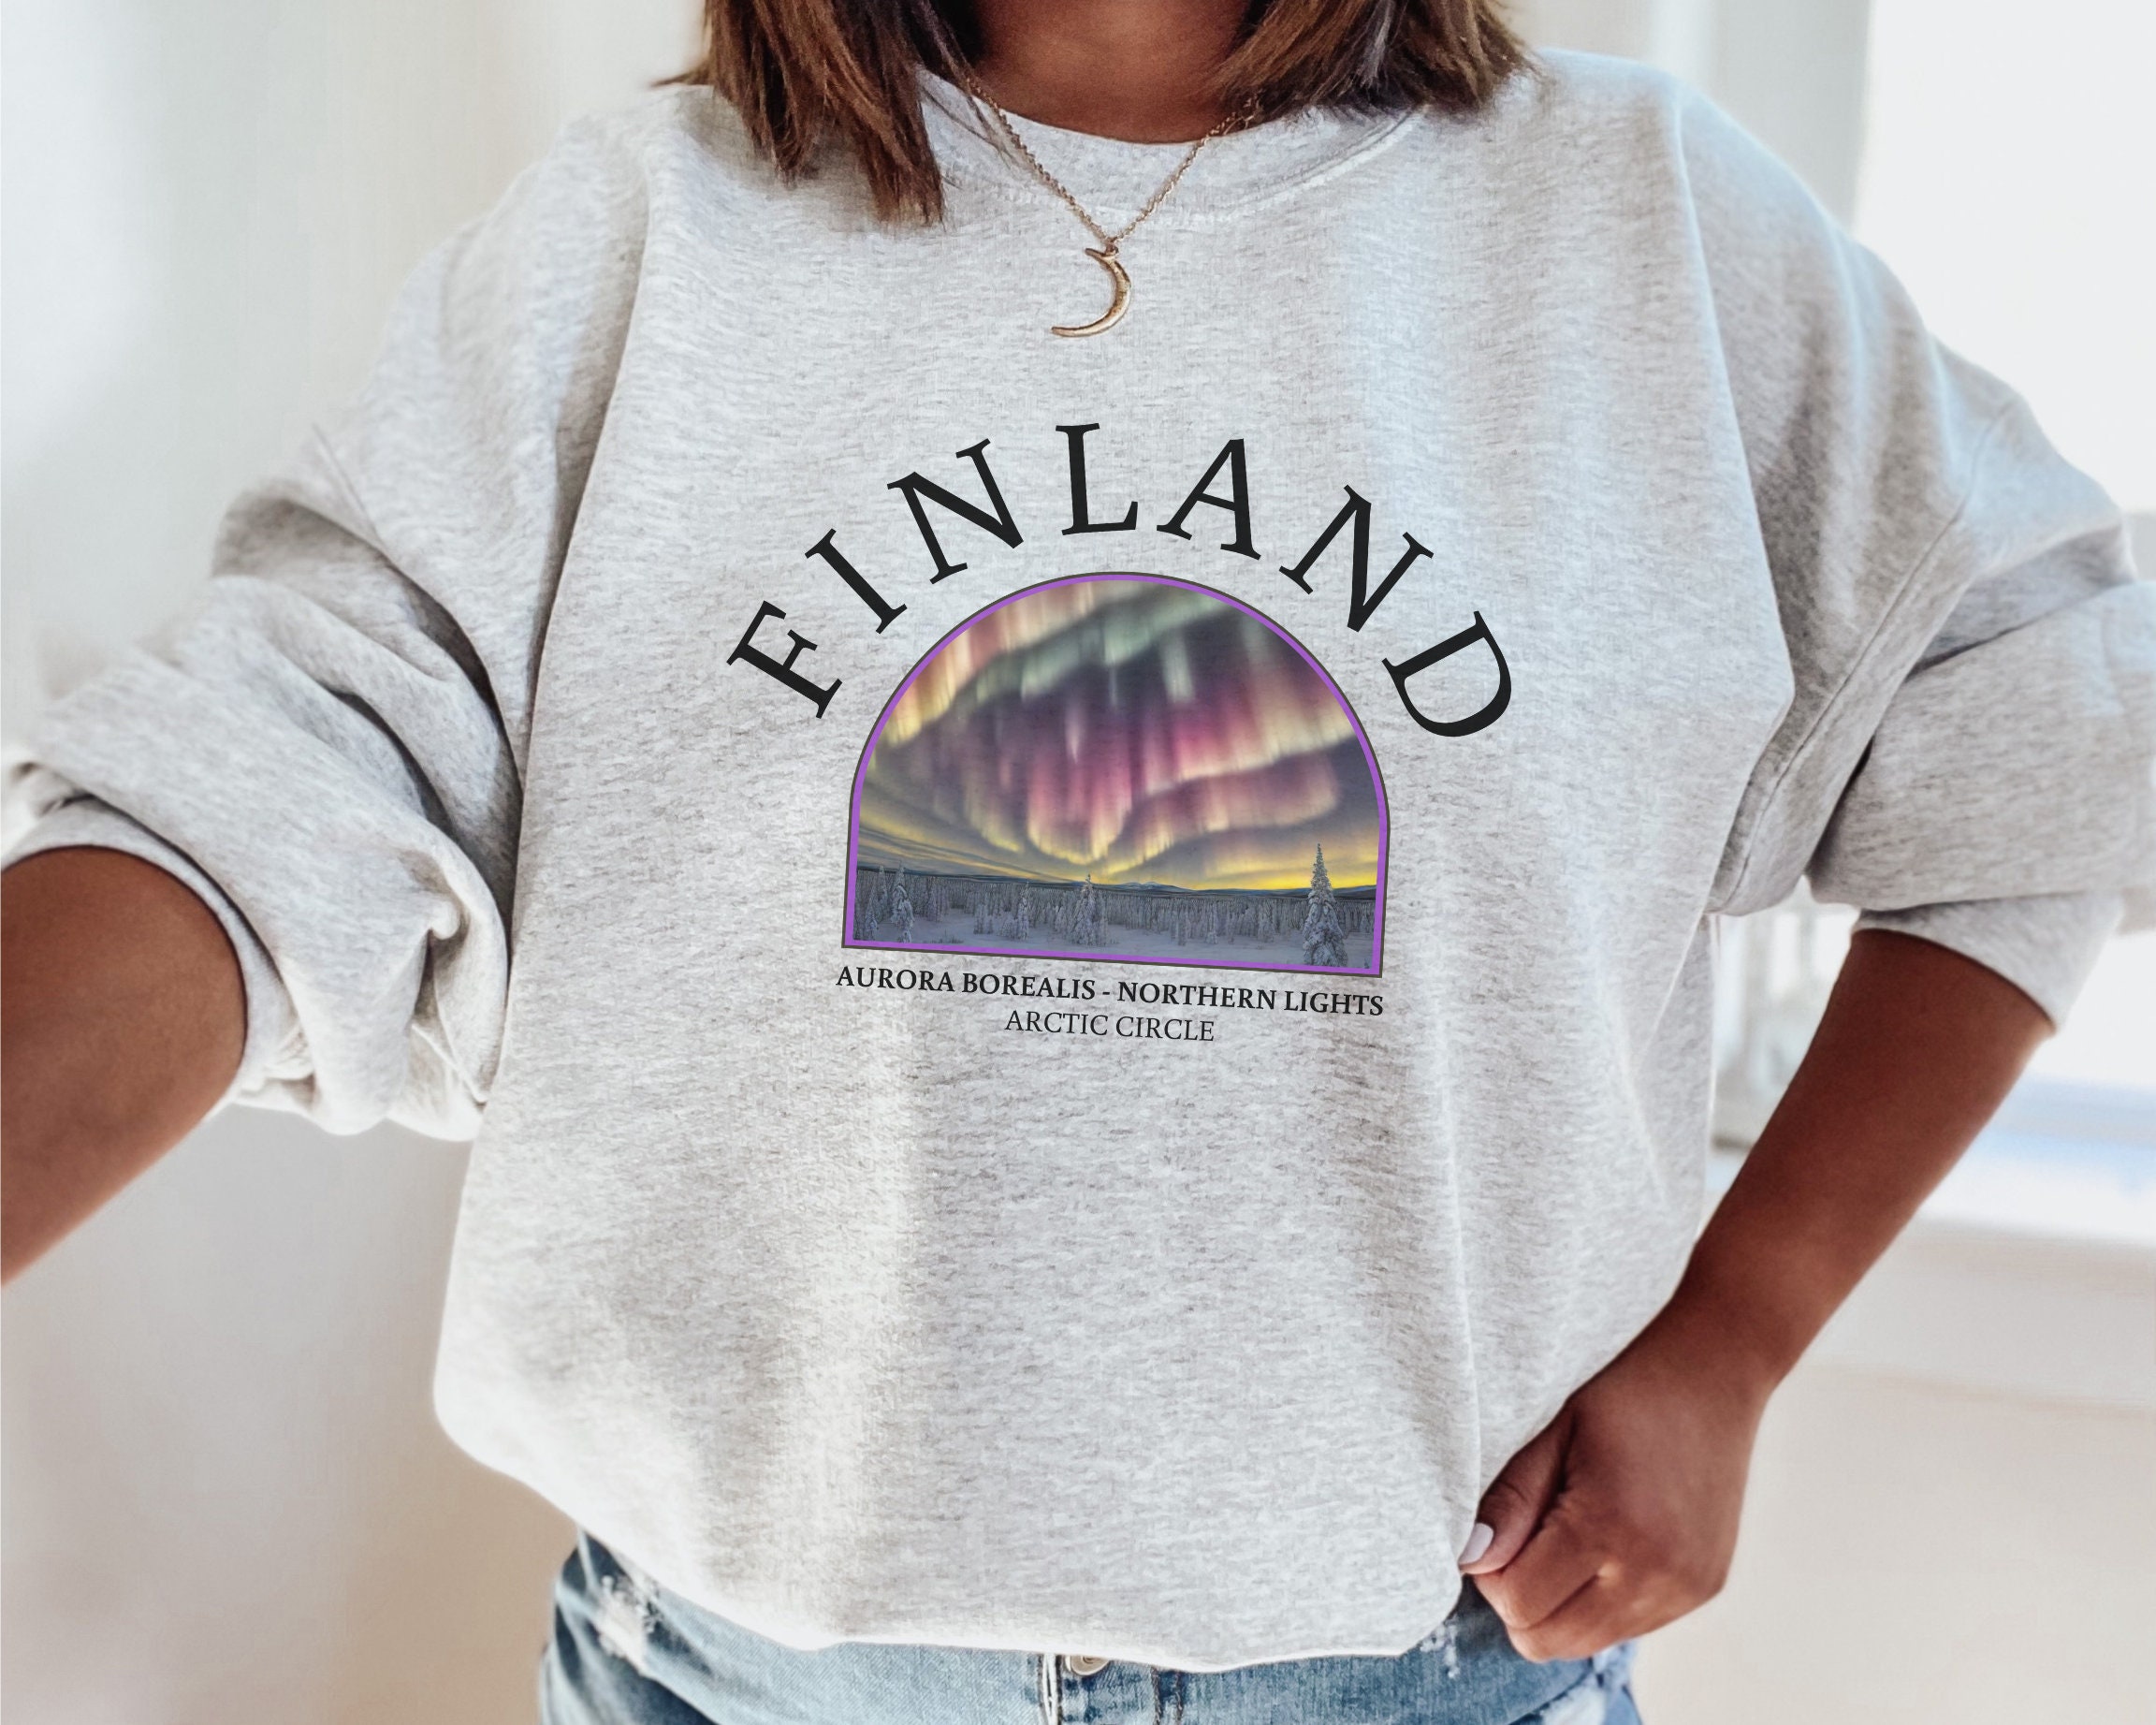 Lapland Clothing - Etsy